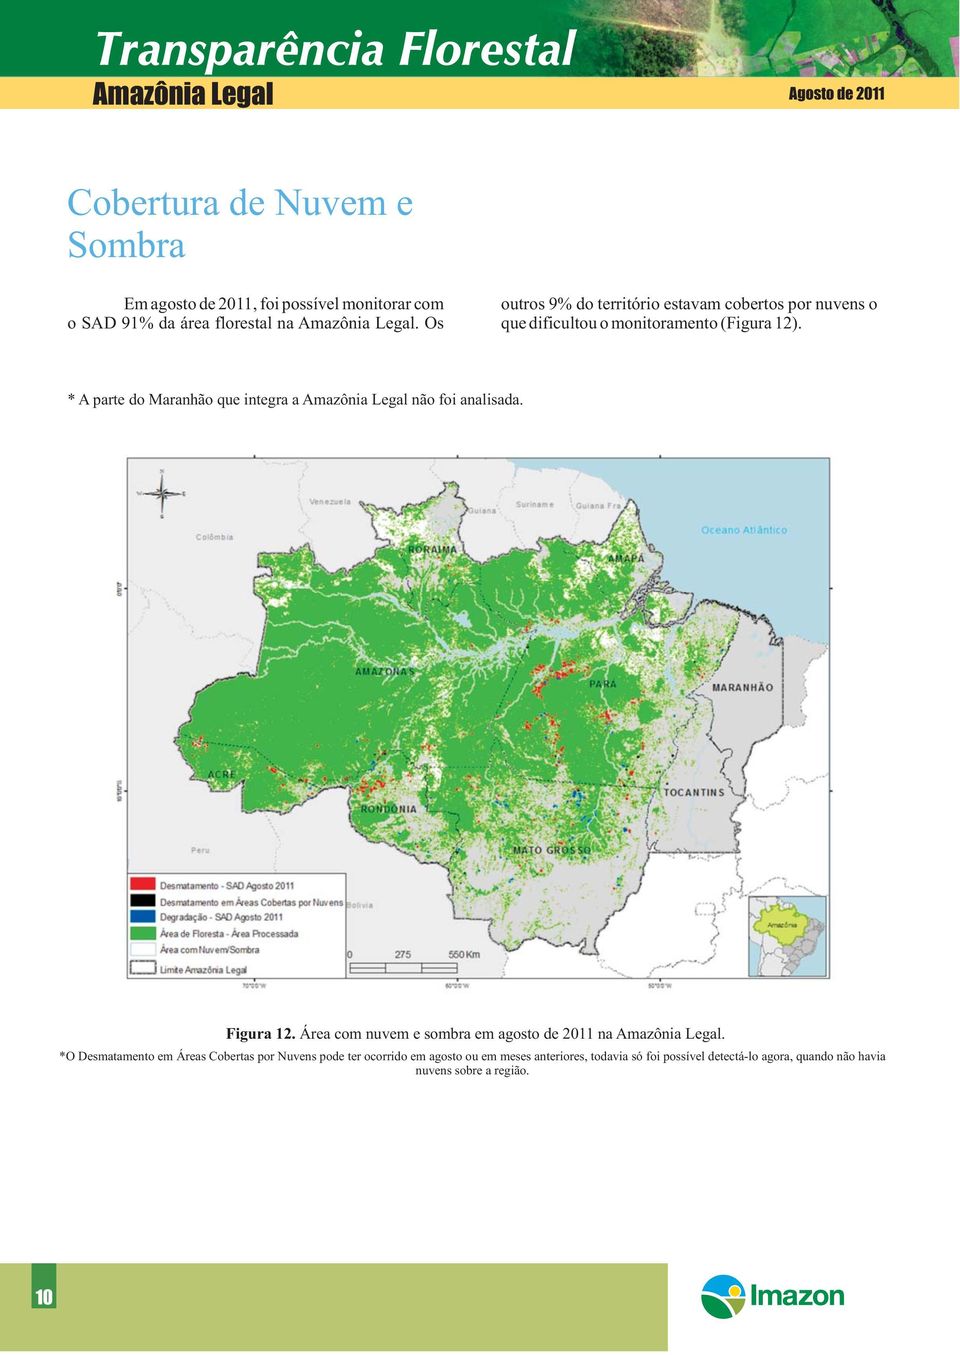 * A parte do Maranhão que integra a Amazônia Legal não foi analisada. Figura 12. Área com nuvem e sombra em agosto de 2011 na Amazônia Legal.